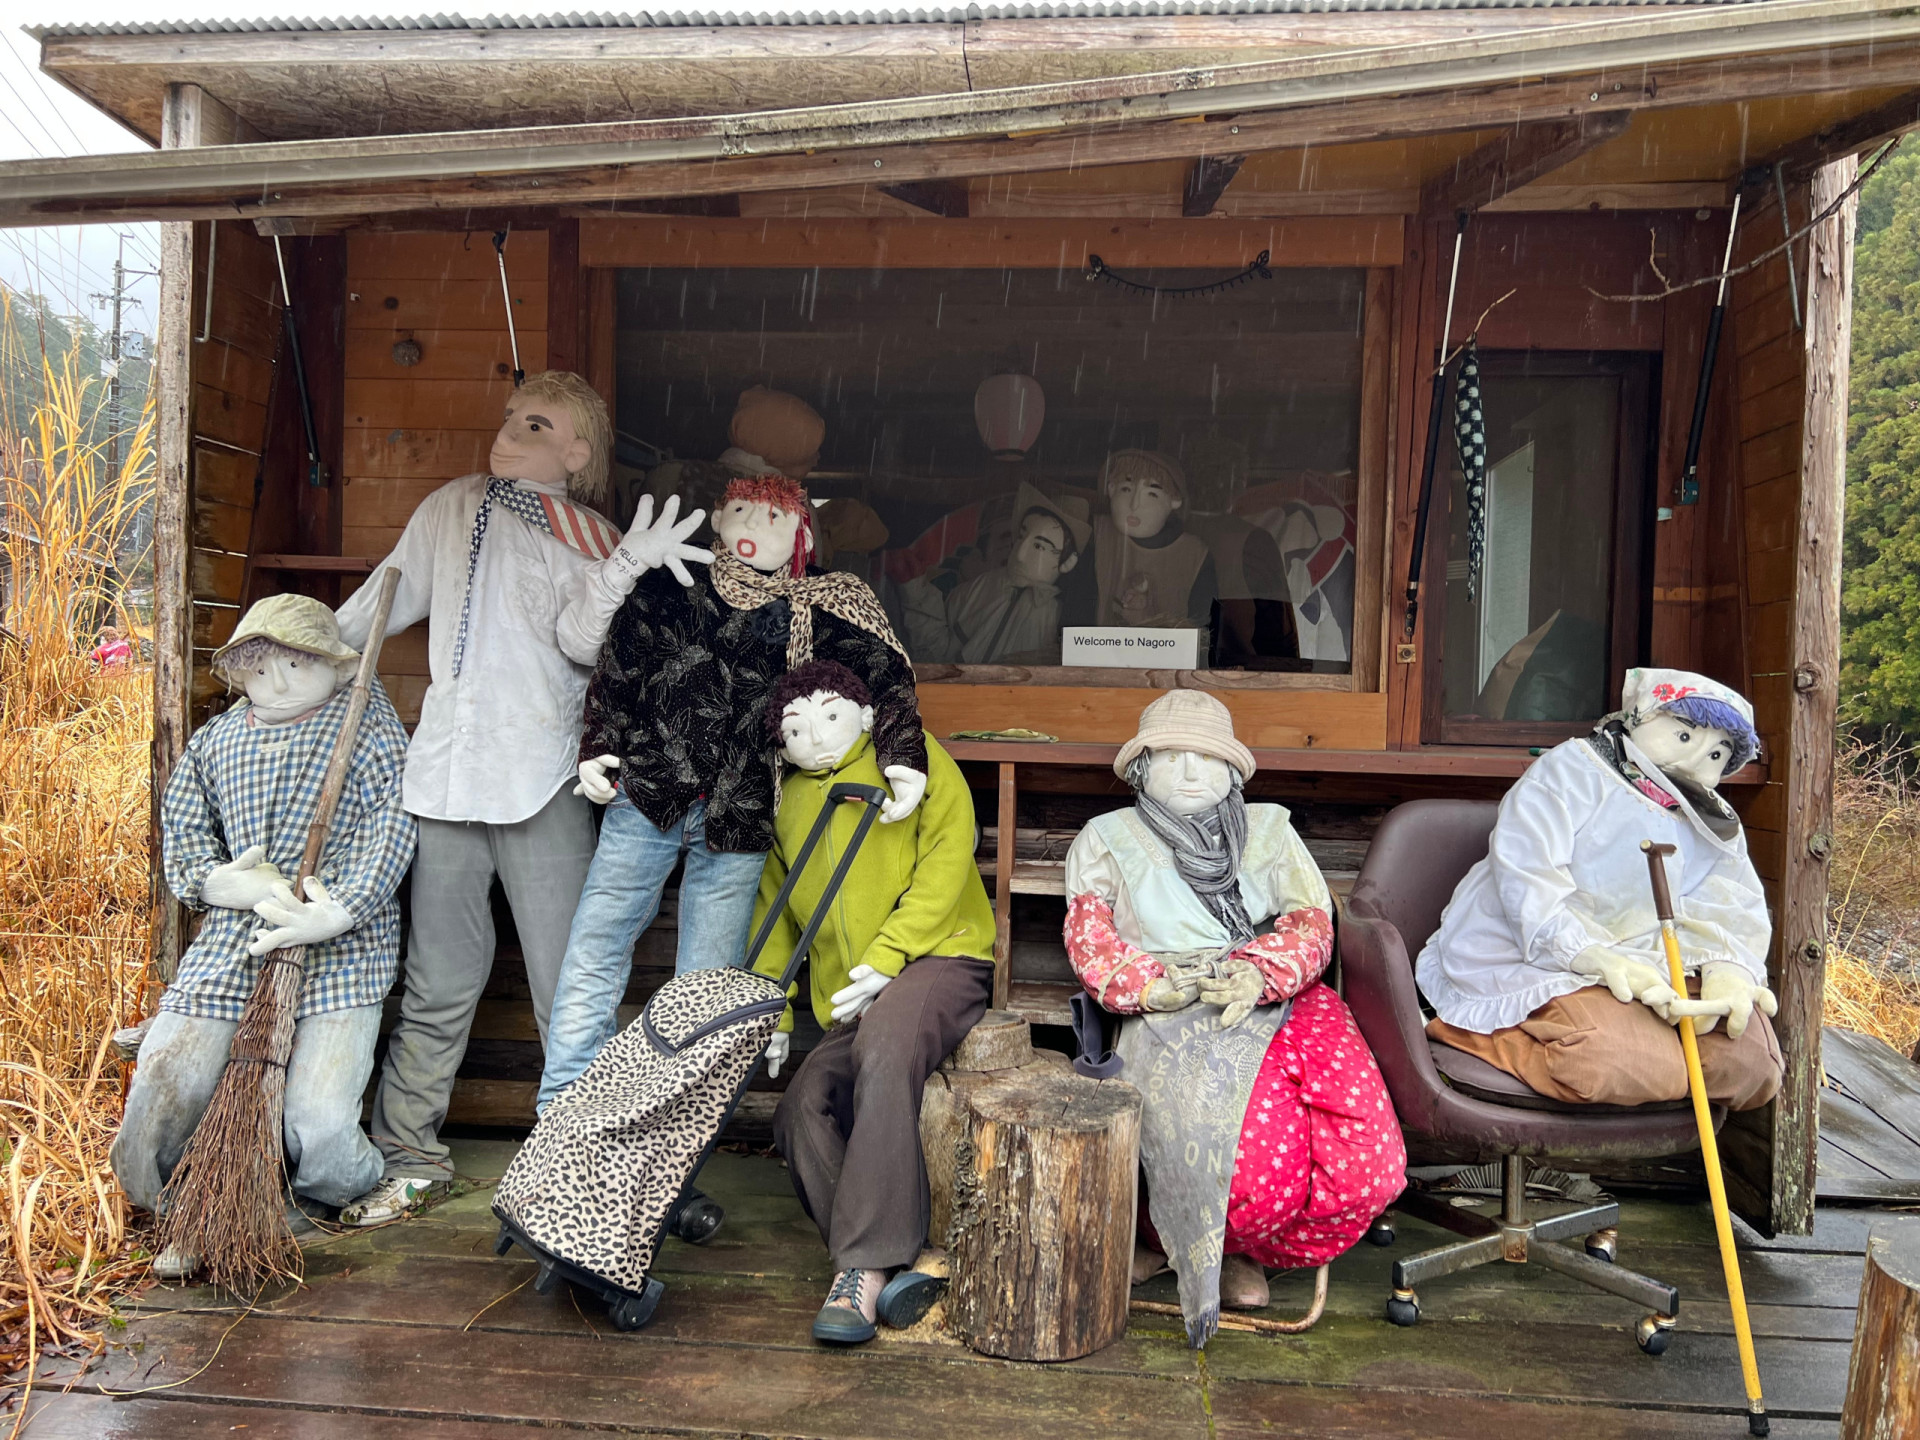 <p>Situé dans la vallée de l'Iya, sur l'île de Shikoku, dans la préfecture de Tokushima, Nagoro offre au visiteur un spectacle vraiment troublant. Des dizaines de poupées réalistes grandeur nature sont disposées autour du village, silencieuses mais voyantes.</p>